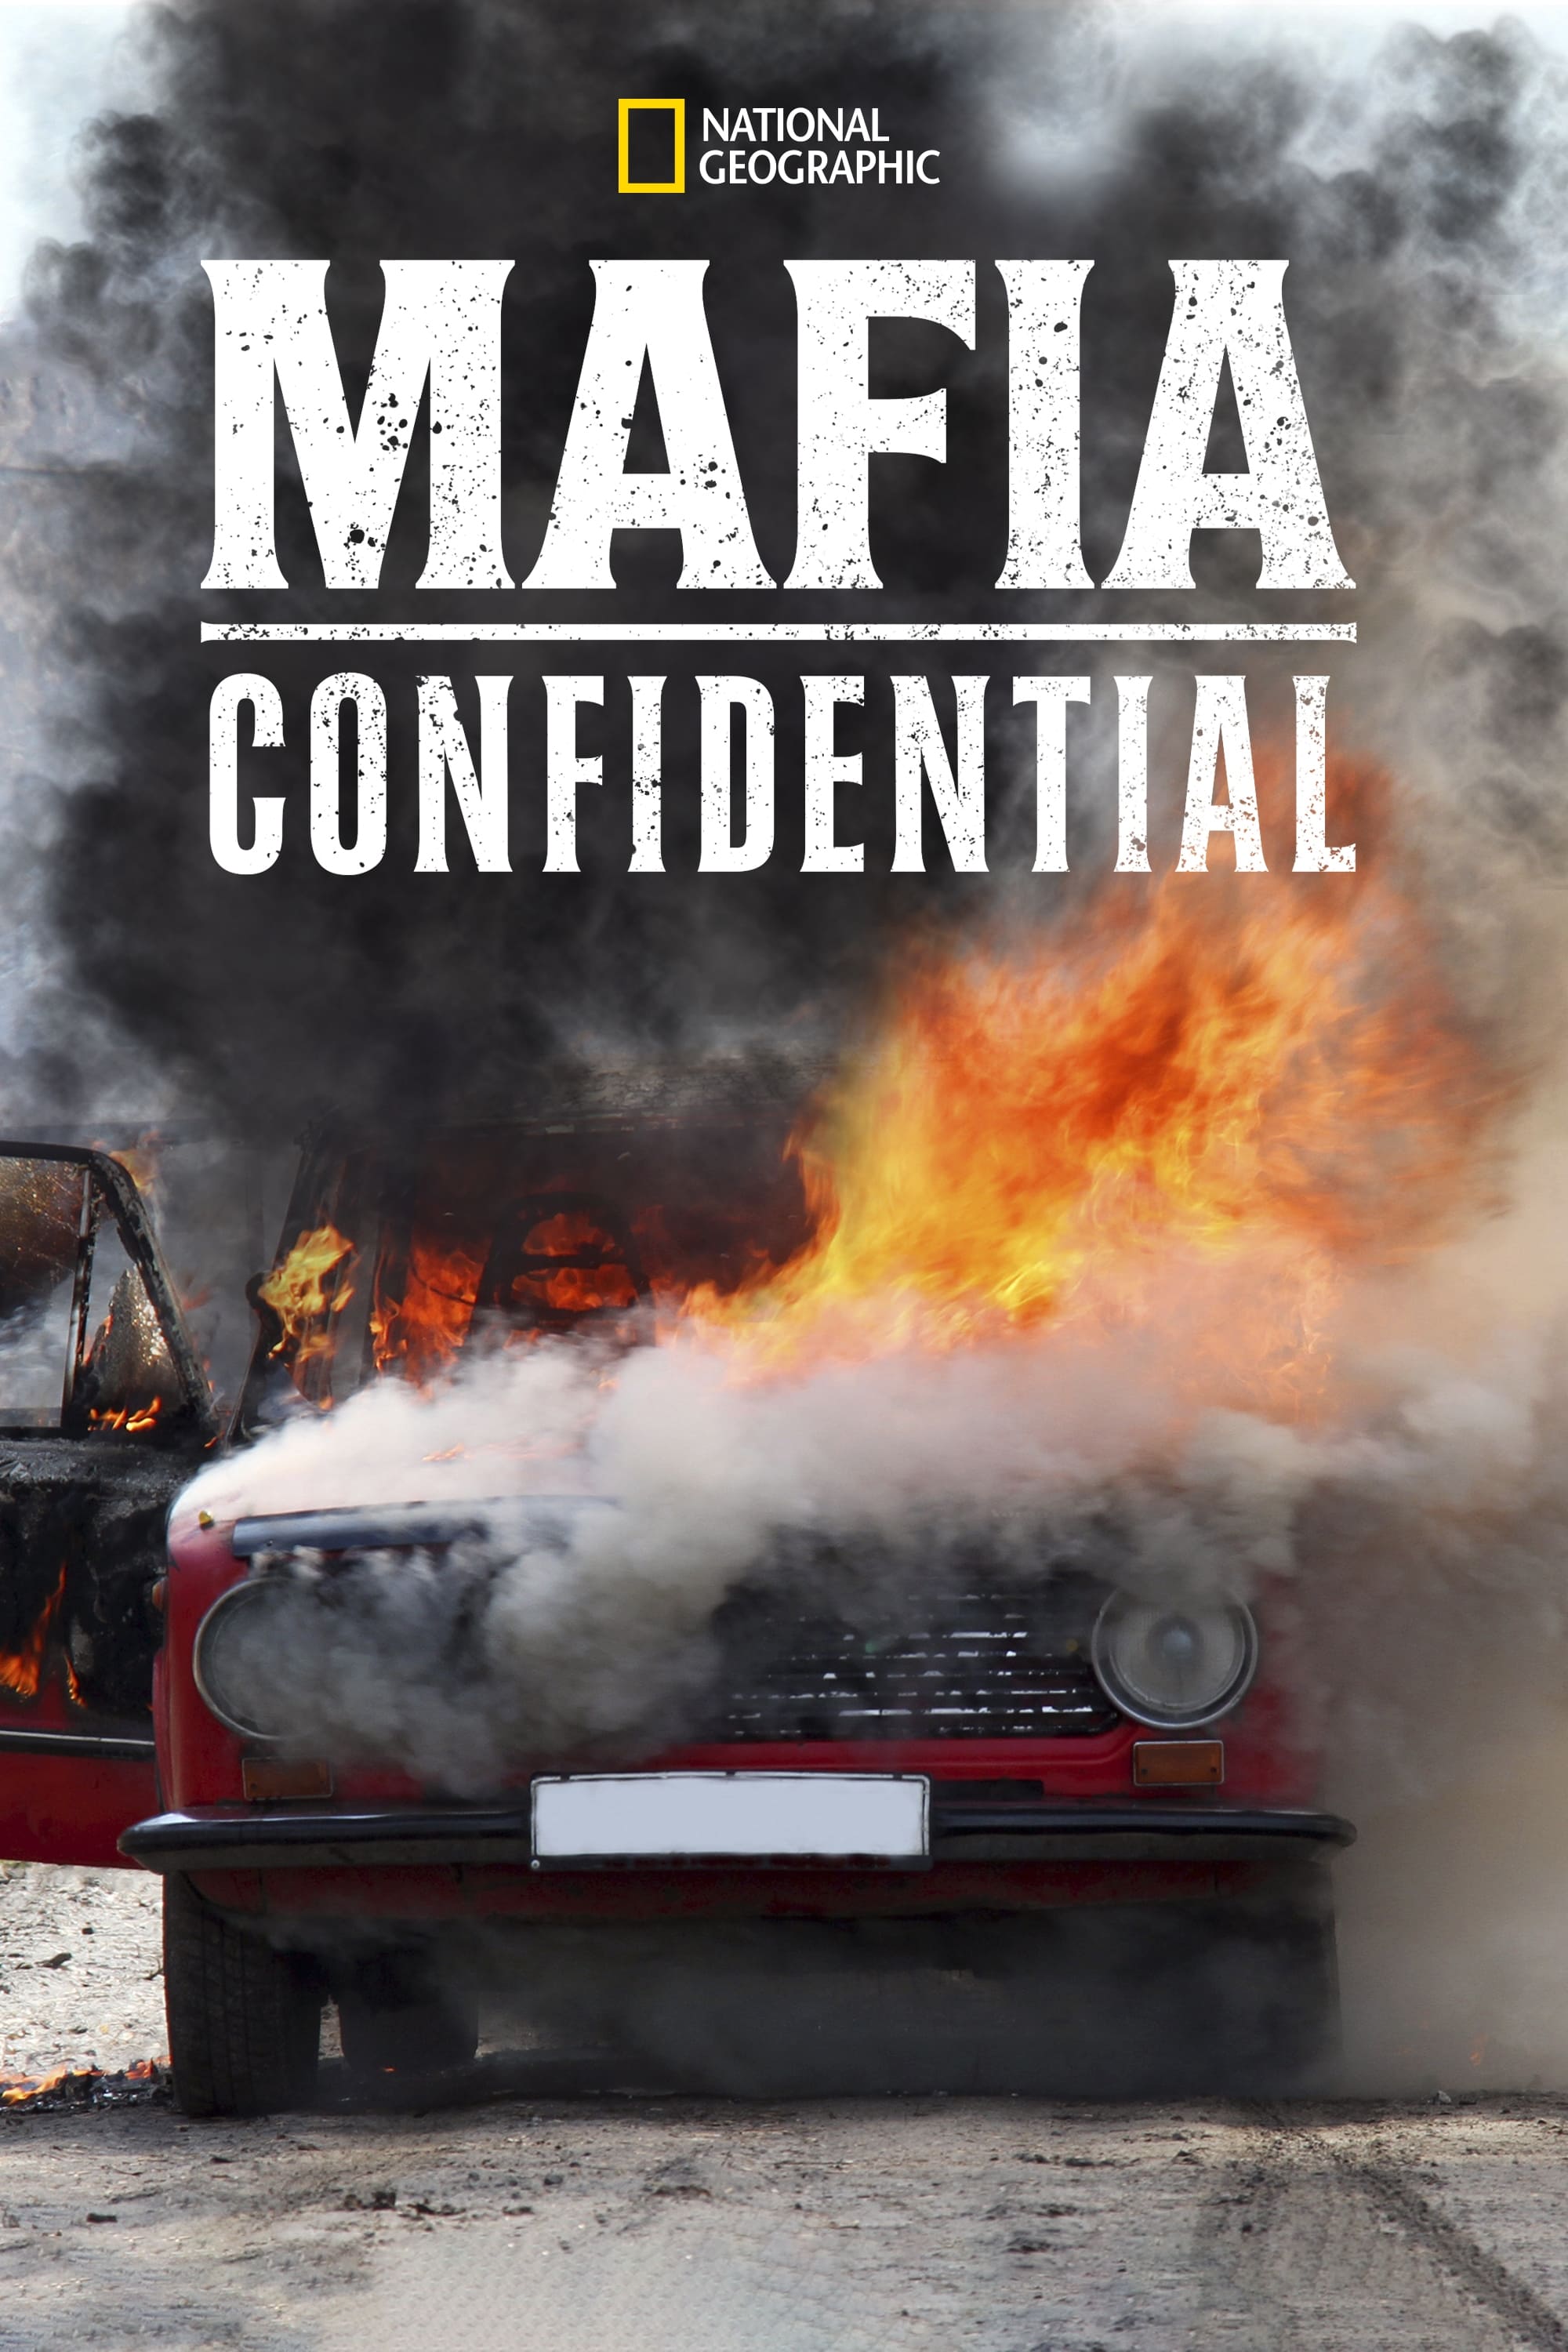 Mafia Confidential